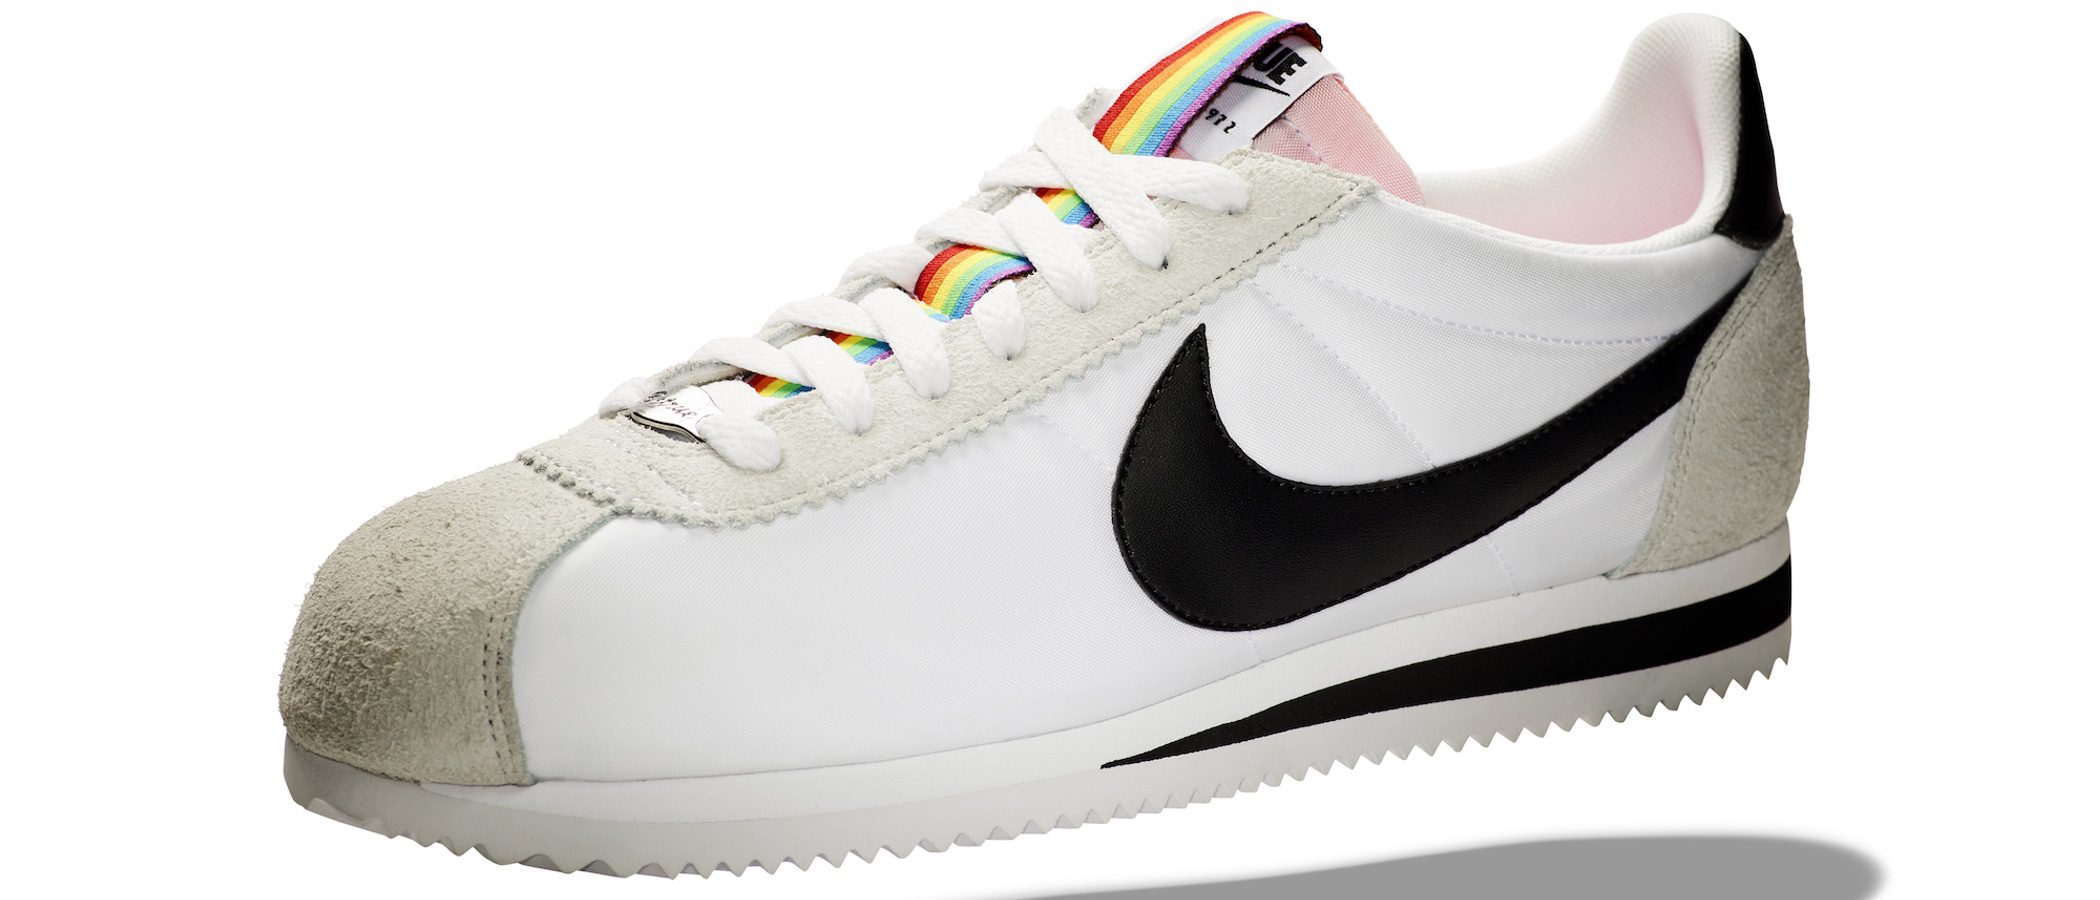 Nike lanza una colección limitada para celebrar el World Pride Madrid